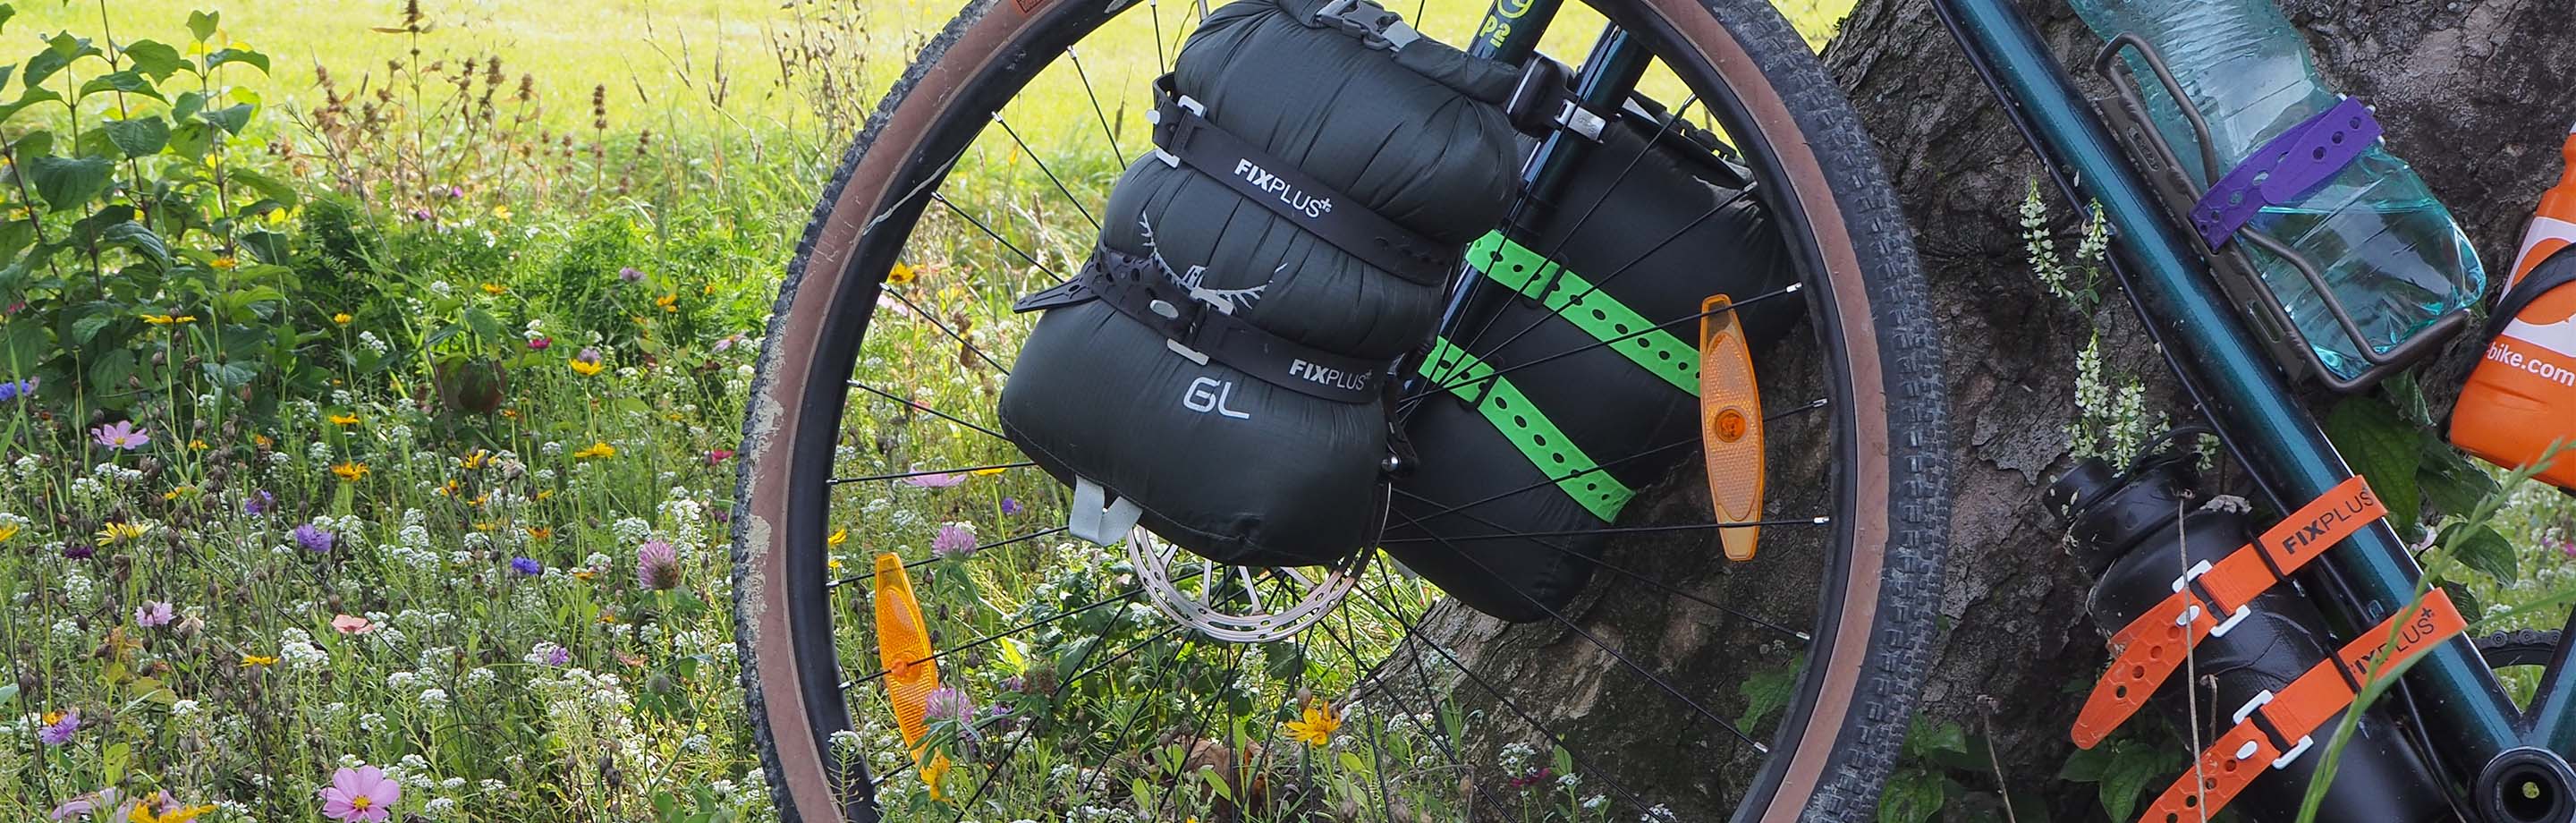 FIXPLUS - slimme riemen voor bikepacking, outdoor & kamperen